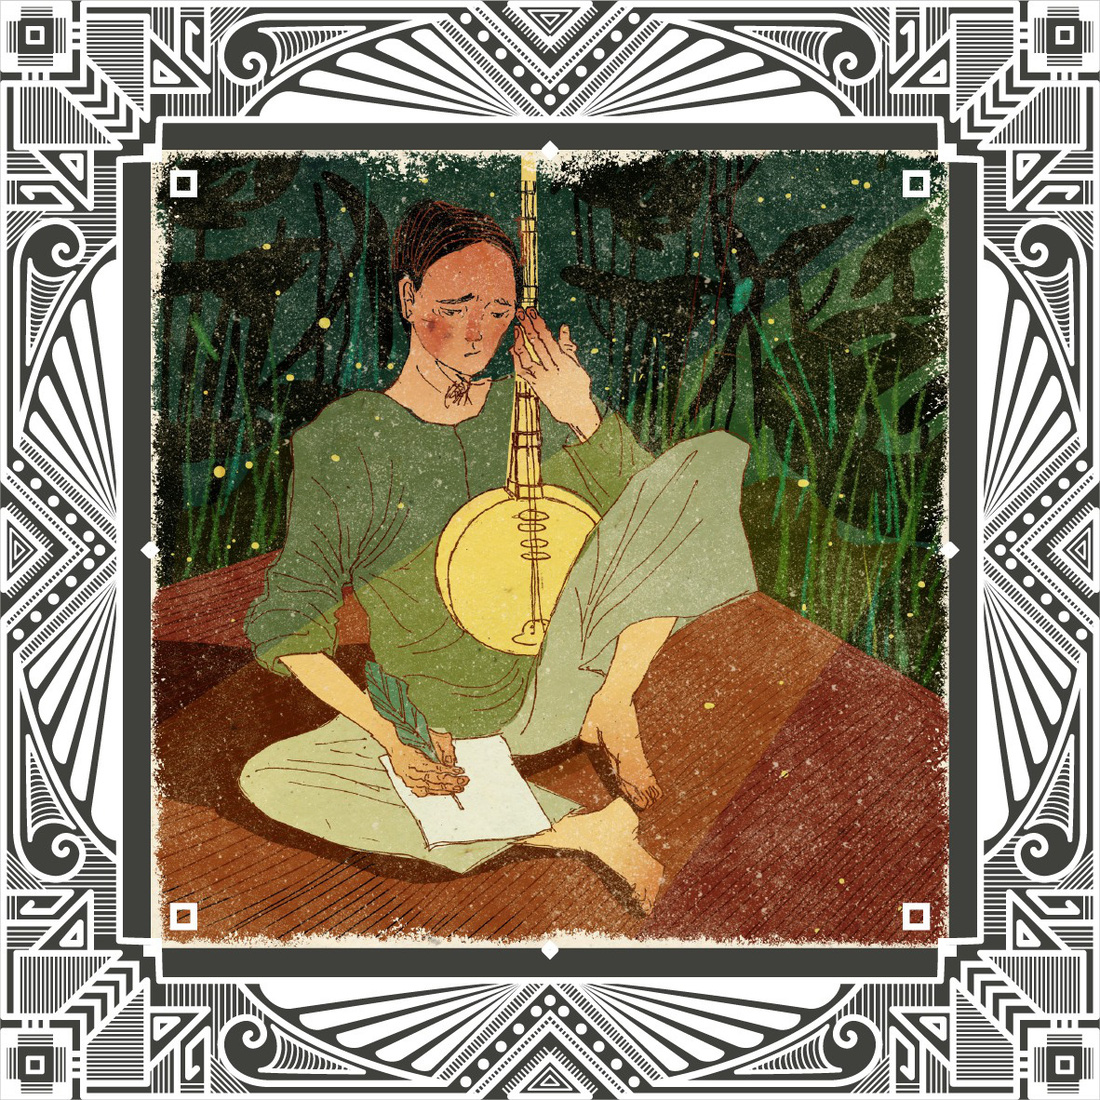 Trăm năm Dạ cổ hoài lang, ngắm bộ tranh về cuộc đời của Cao Văn Lầu - Ảnh 14.